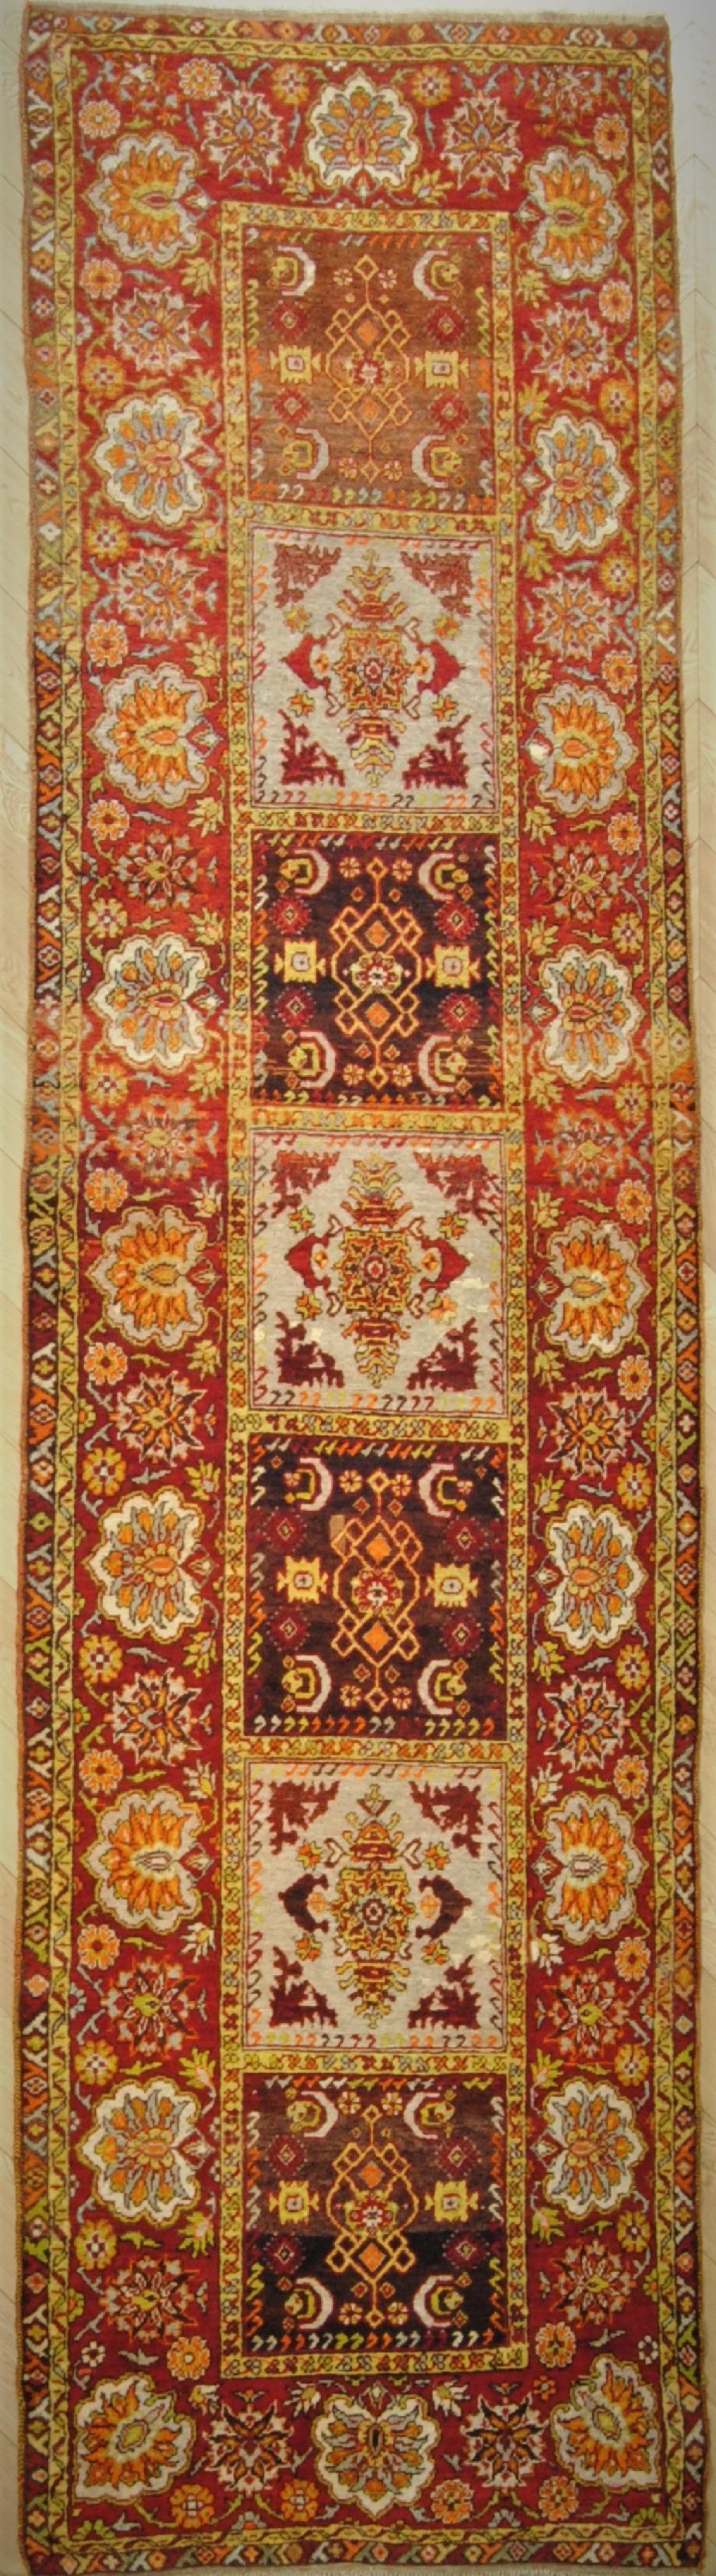 Dieser feine anatolische Teppich stammt aus dem Gebiet FETHIYE an der Westküste. Seine Hauptmerkmale sind neben der weichen und glänzenden Wolle die warmen Erdfarben und die Dekoration, die anmutiger ist als bei anderen Teppichen aus anatolischer